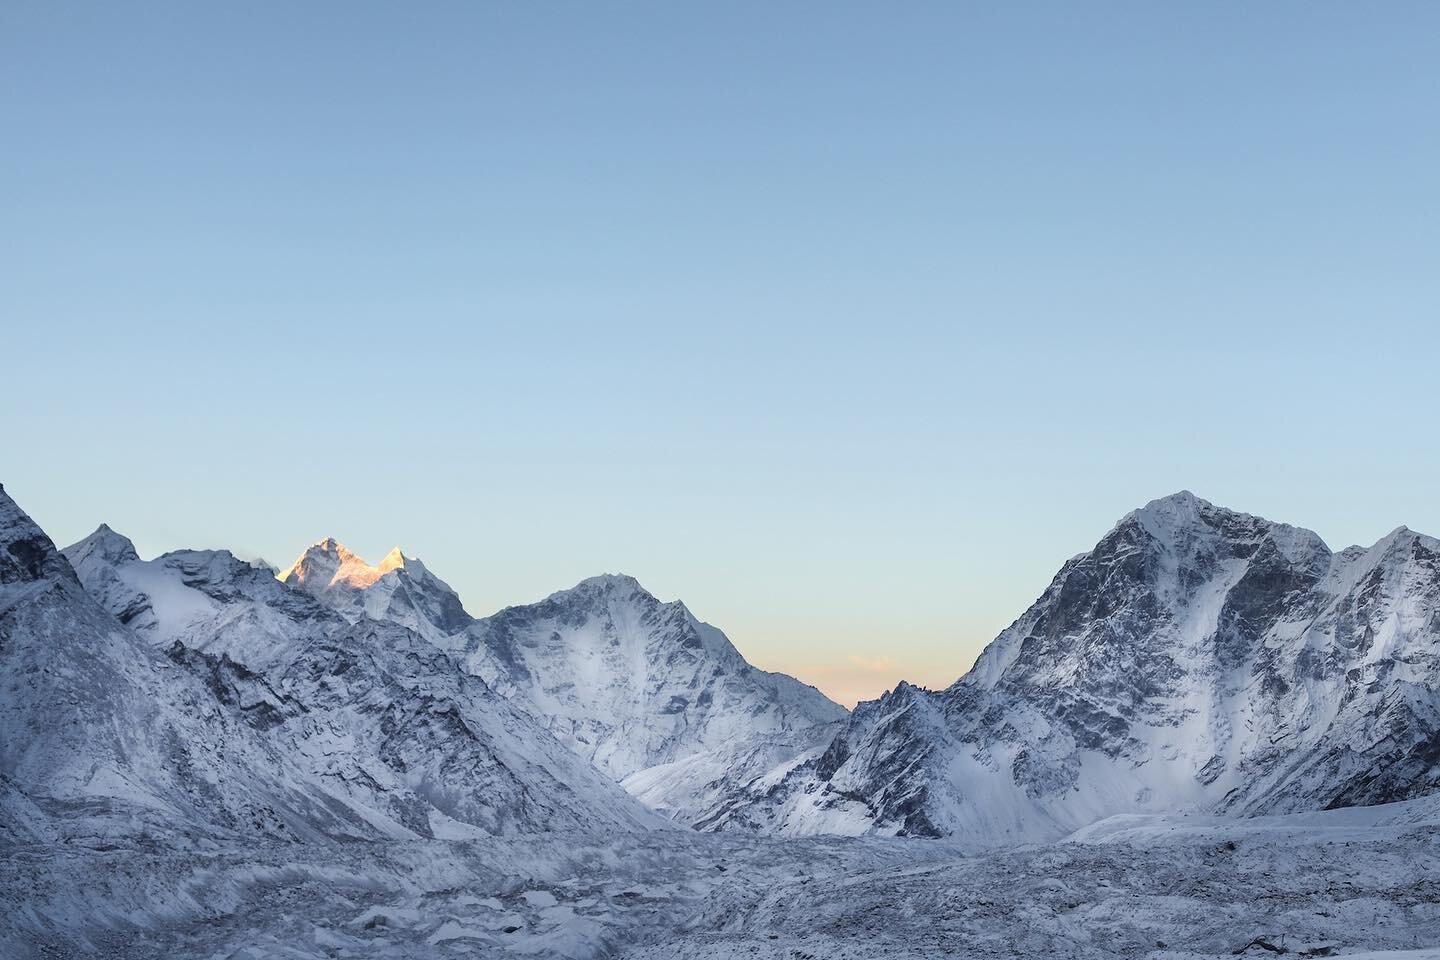 Sunrise at Everest base camp, Himalayas, Nepal, 2017 🇳🇵